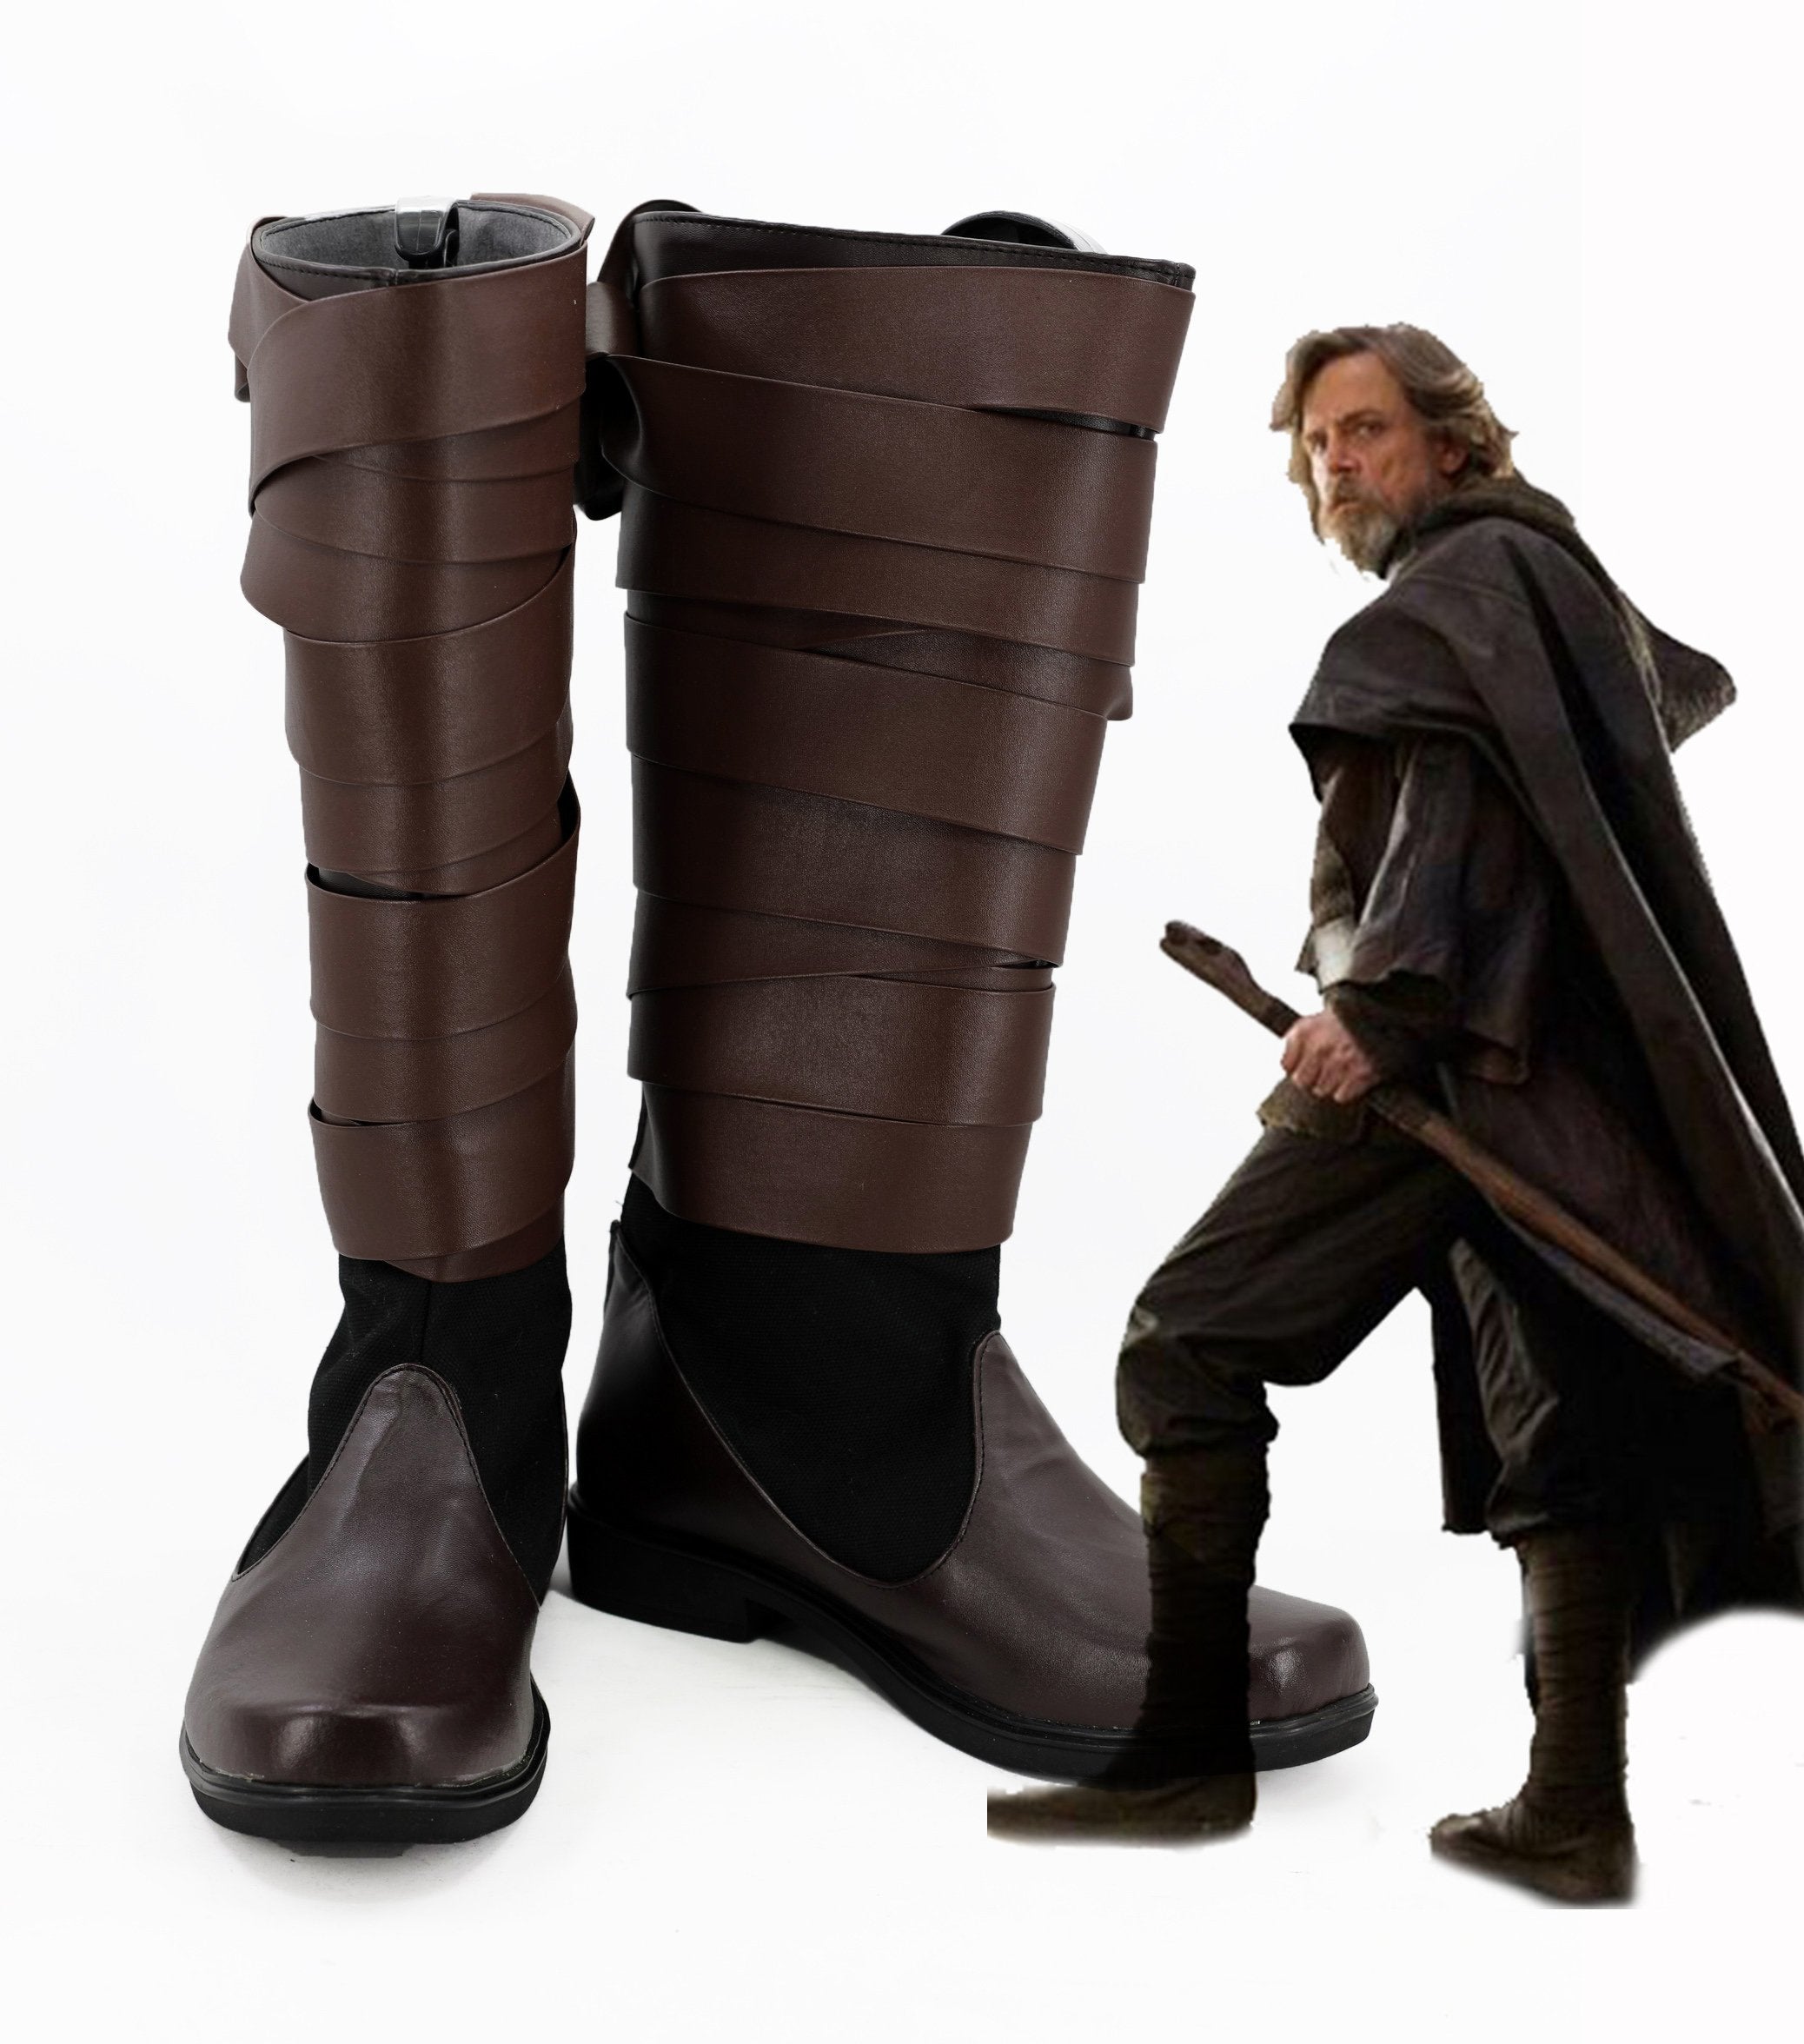 Star Wars 8 The Last Jedi Luke Skywalker Boots Cosplay Shoes